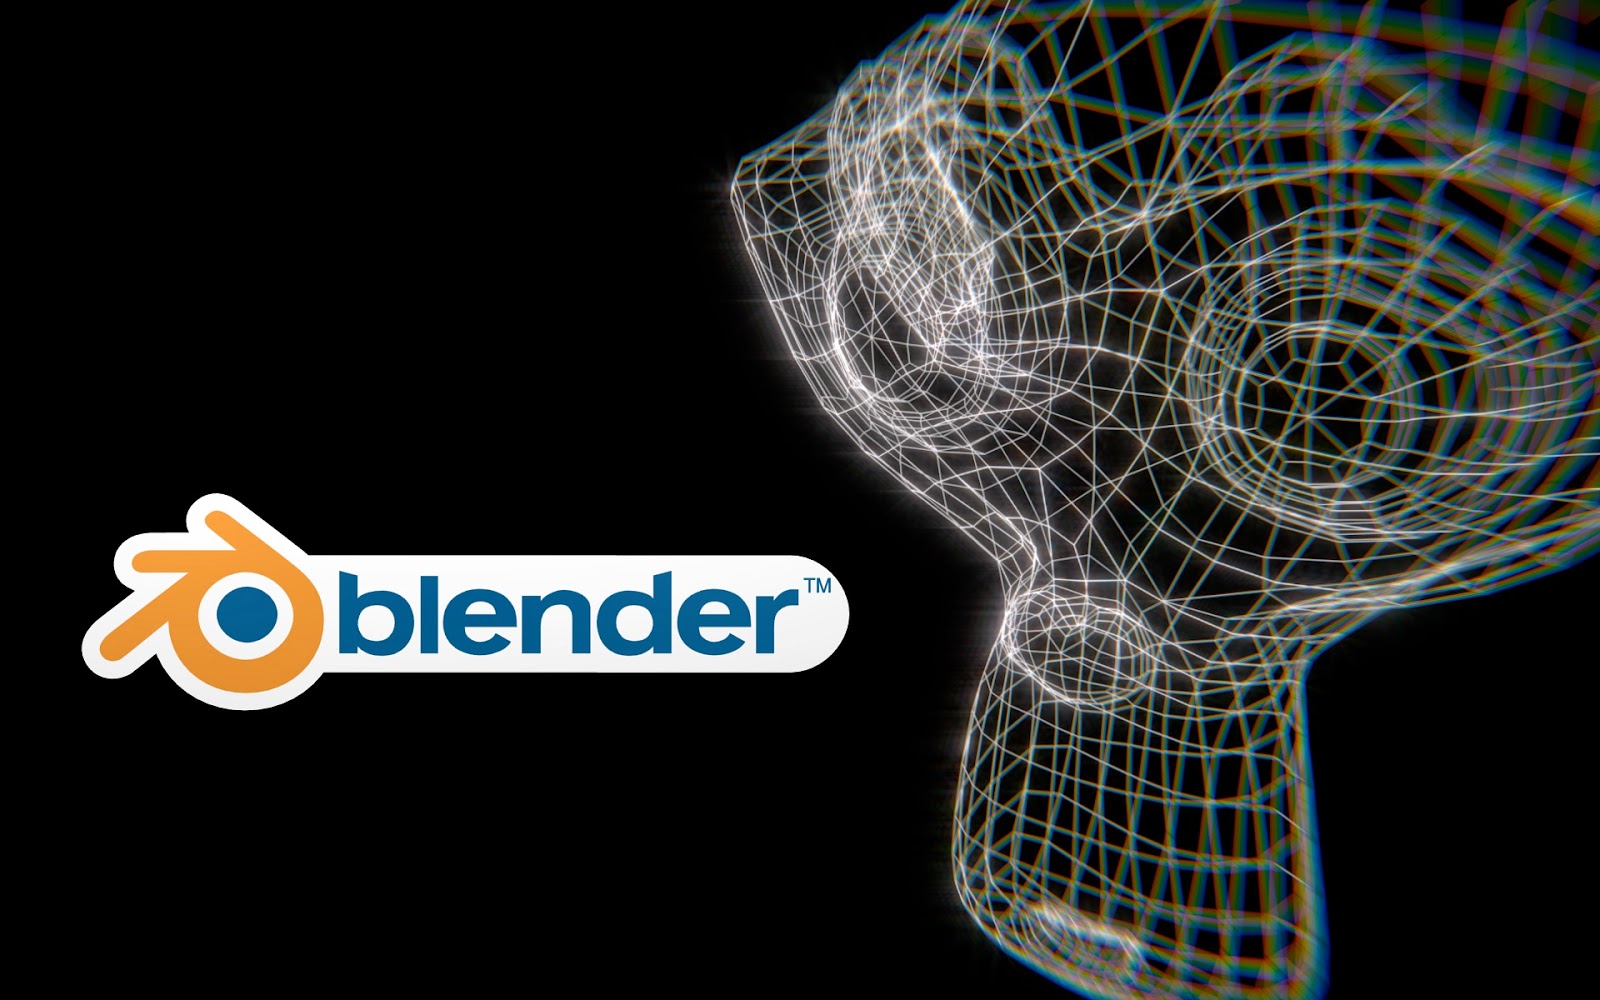 blender 2.8 download free